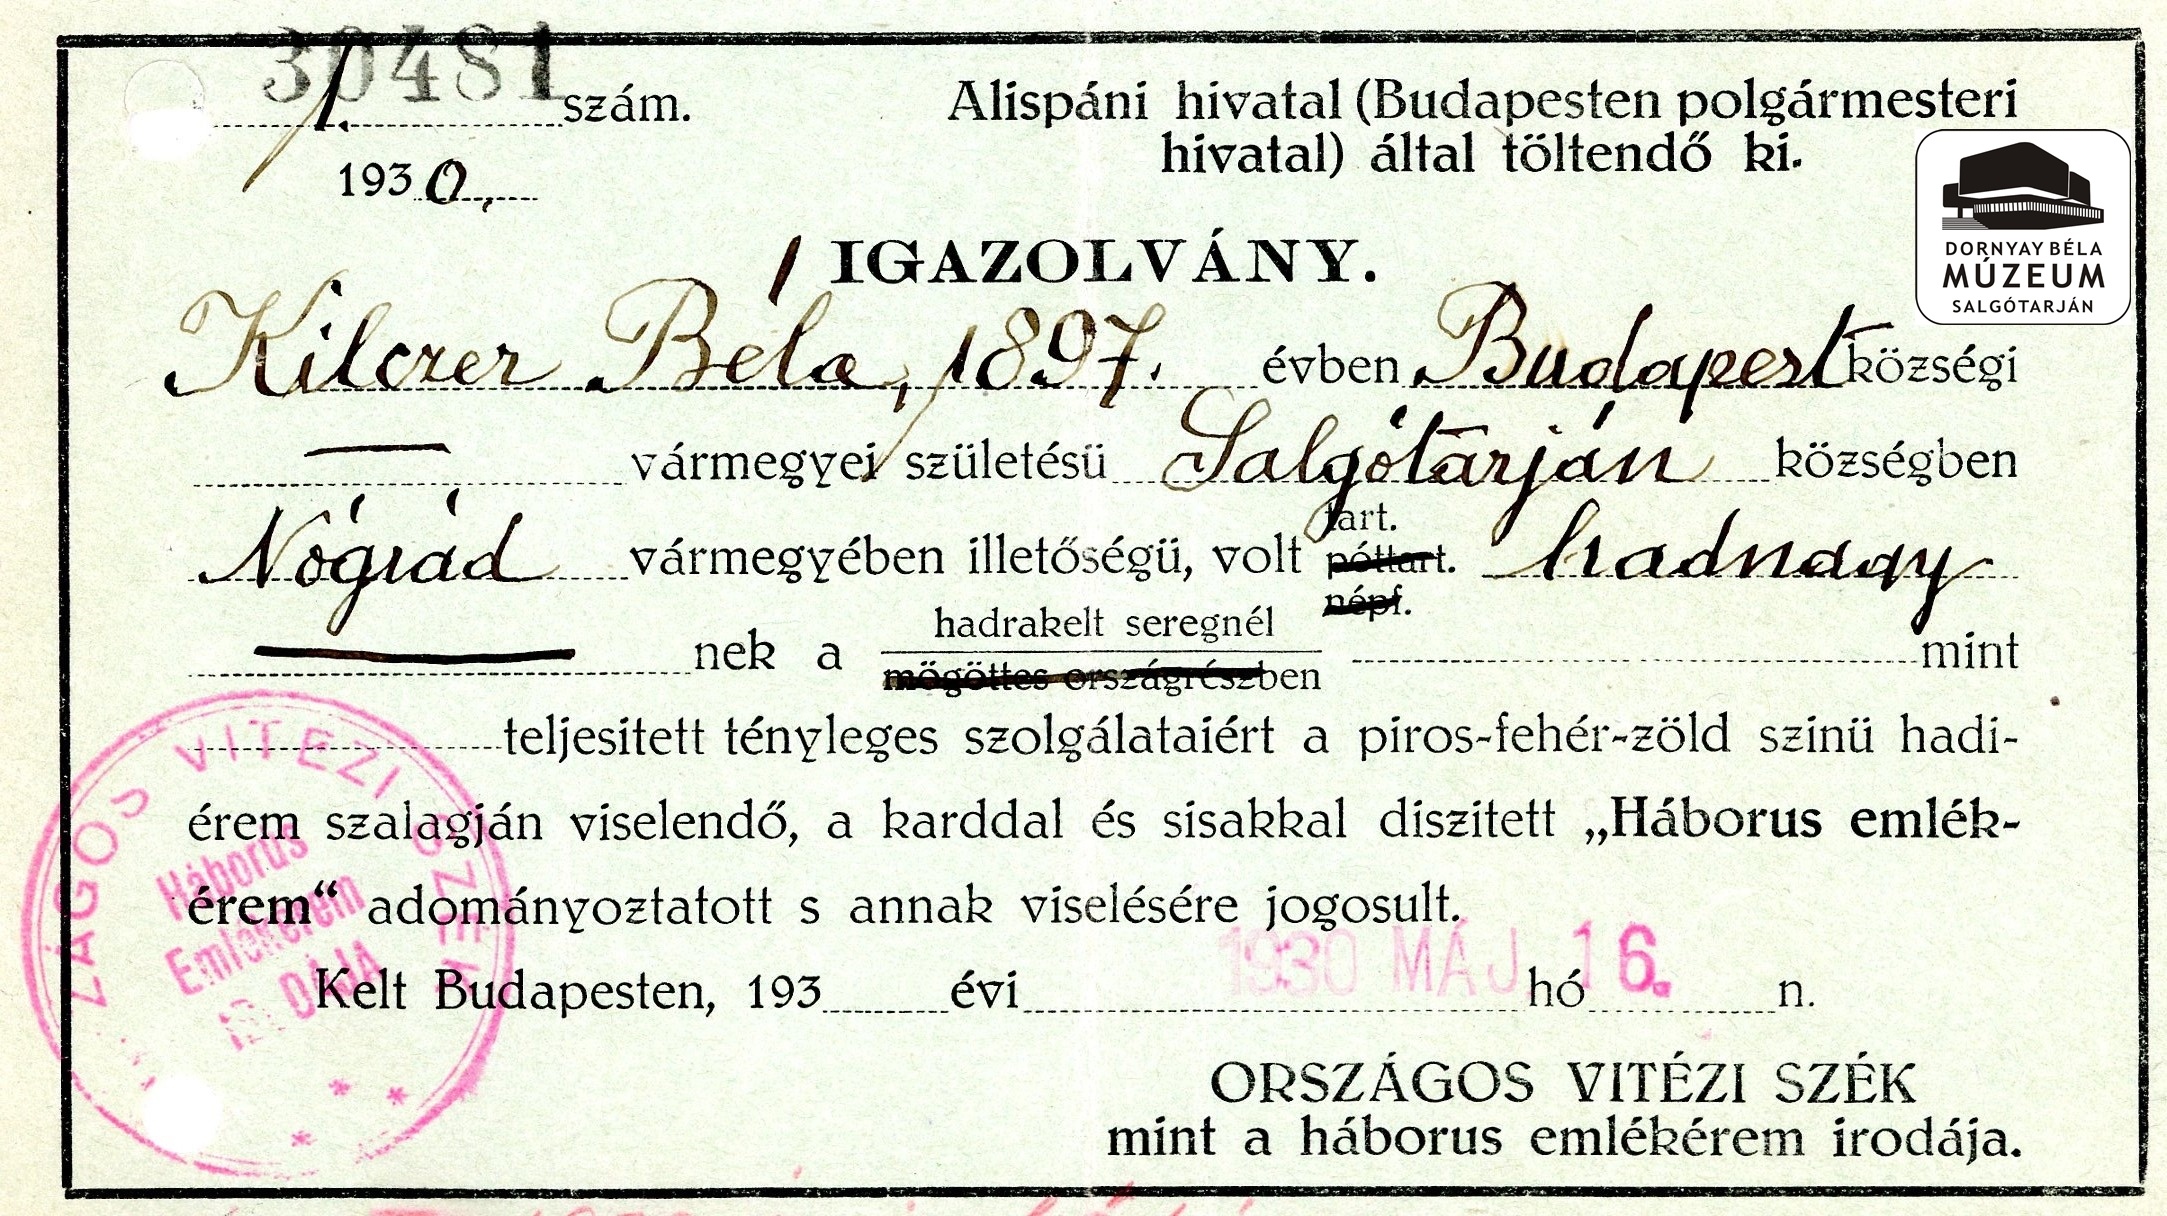 Kilczer Béla igazolványa emlékérem-viselési jogosultságáról (Dornyay Béla Múzeum, Salgótarján CC BY-NC-SA)